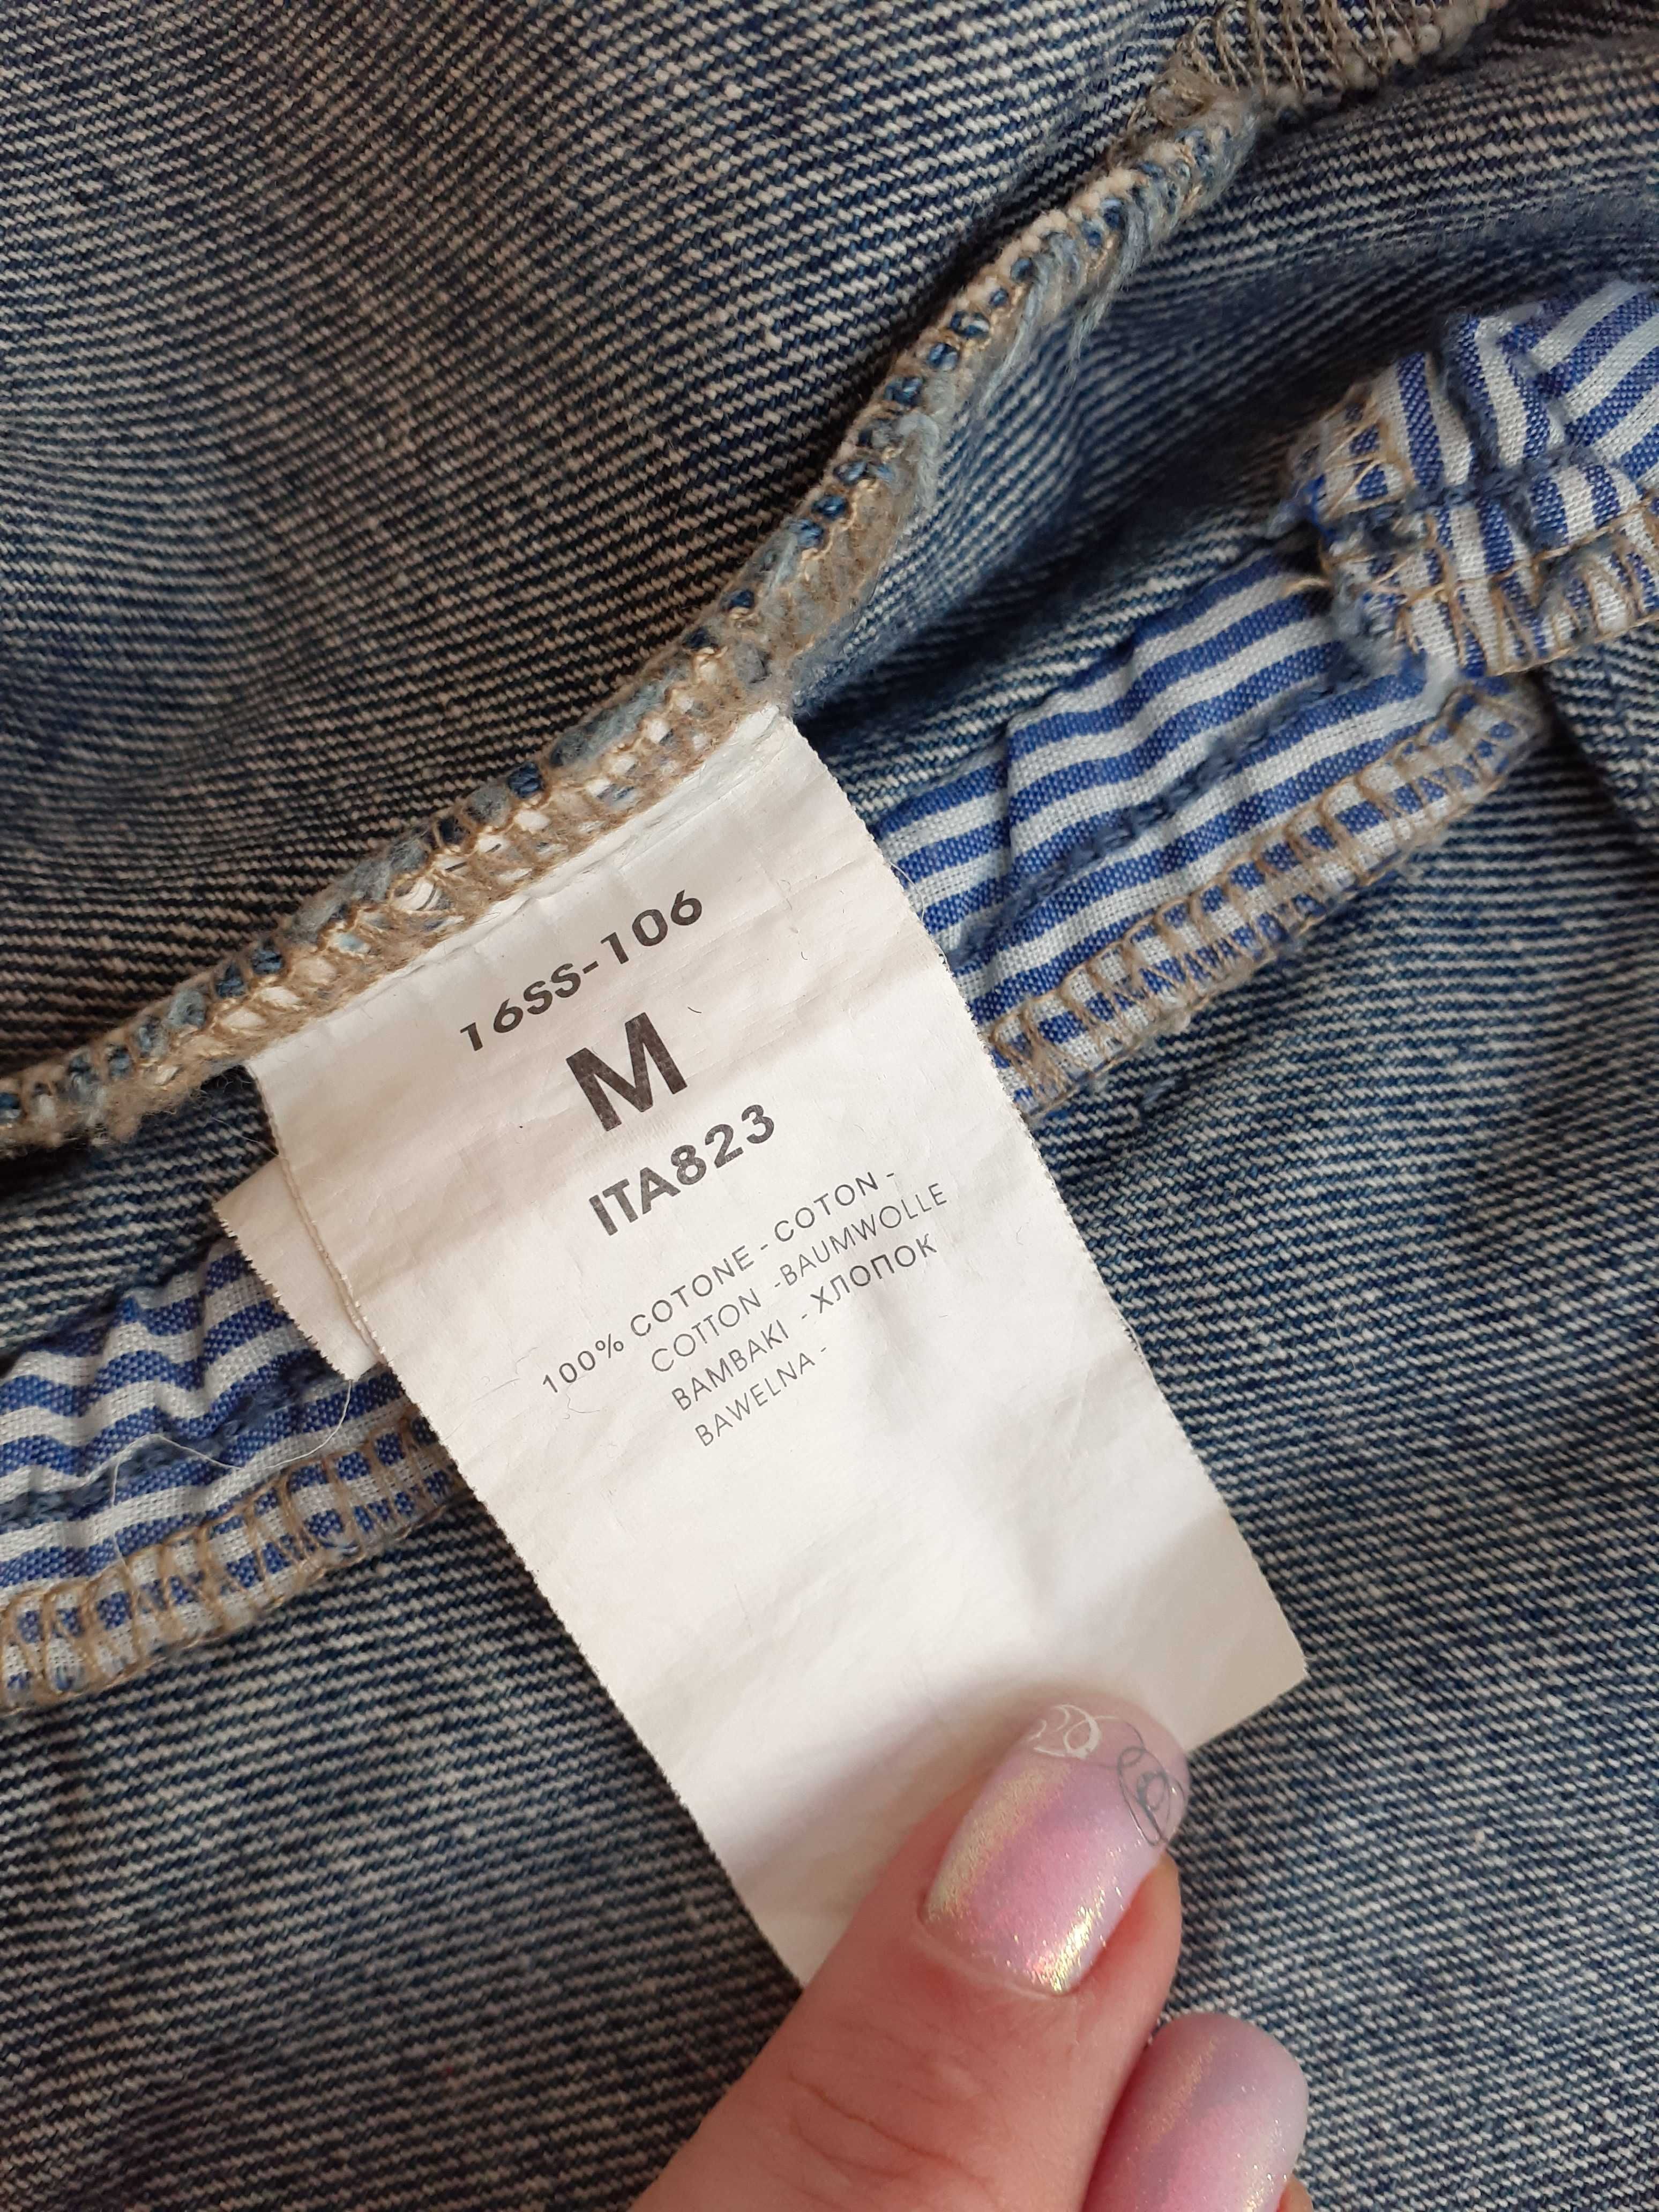 Пиджак М (44-48) 100% коттон оверсайз рваный джинс терка свободный